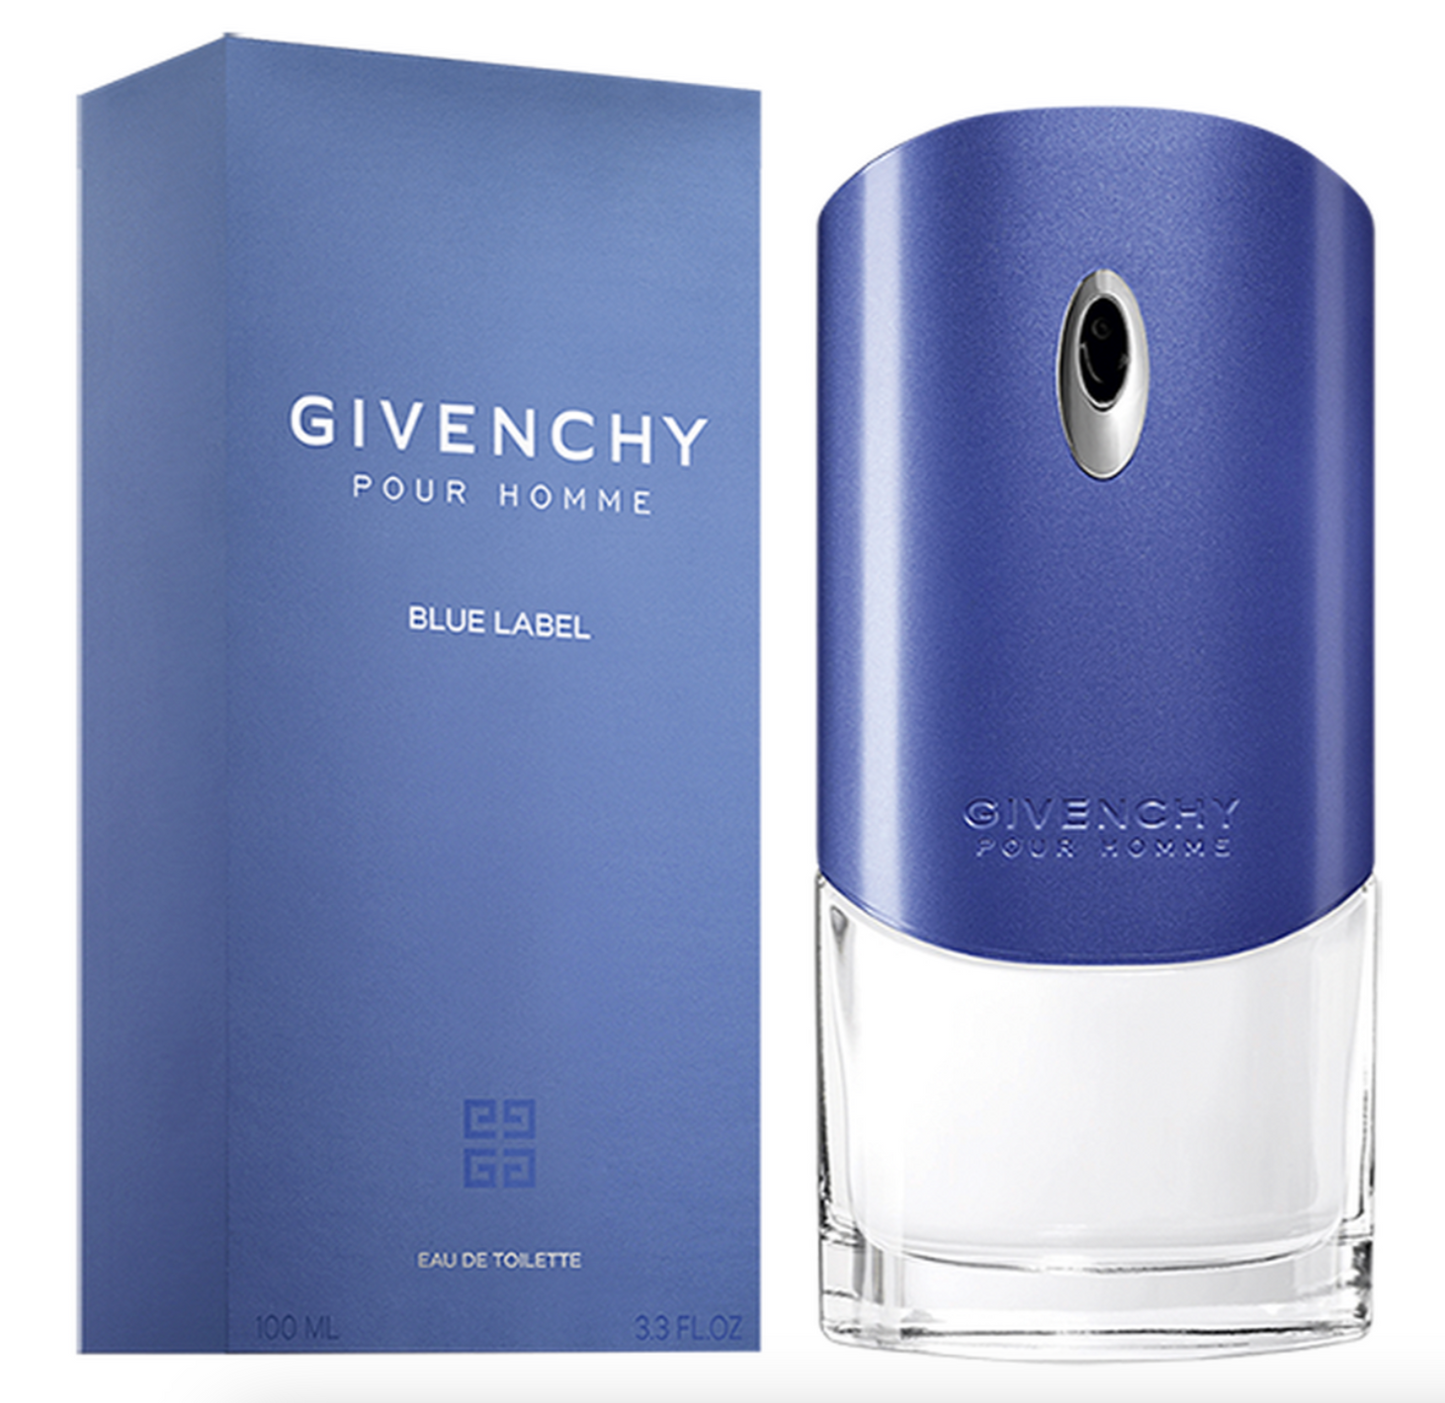 Givenchy pour homme blue label